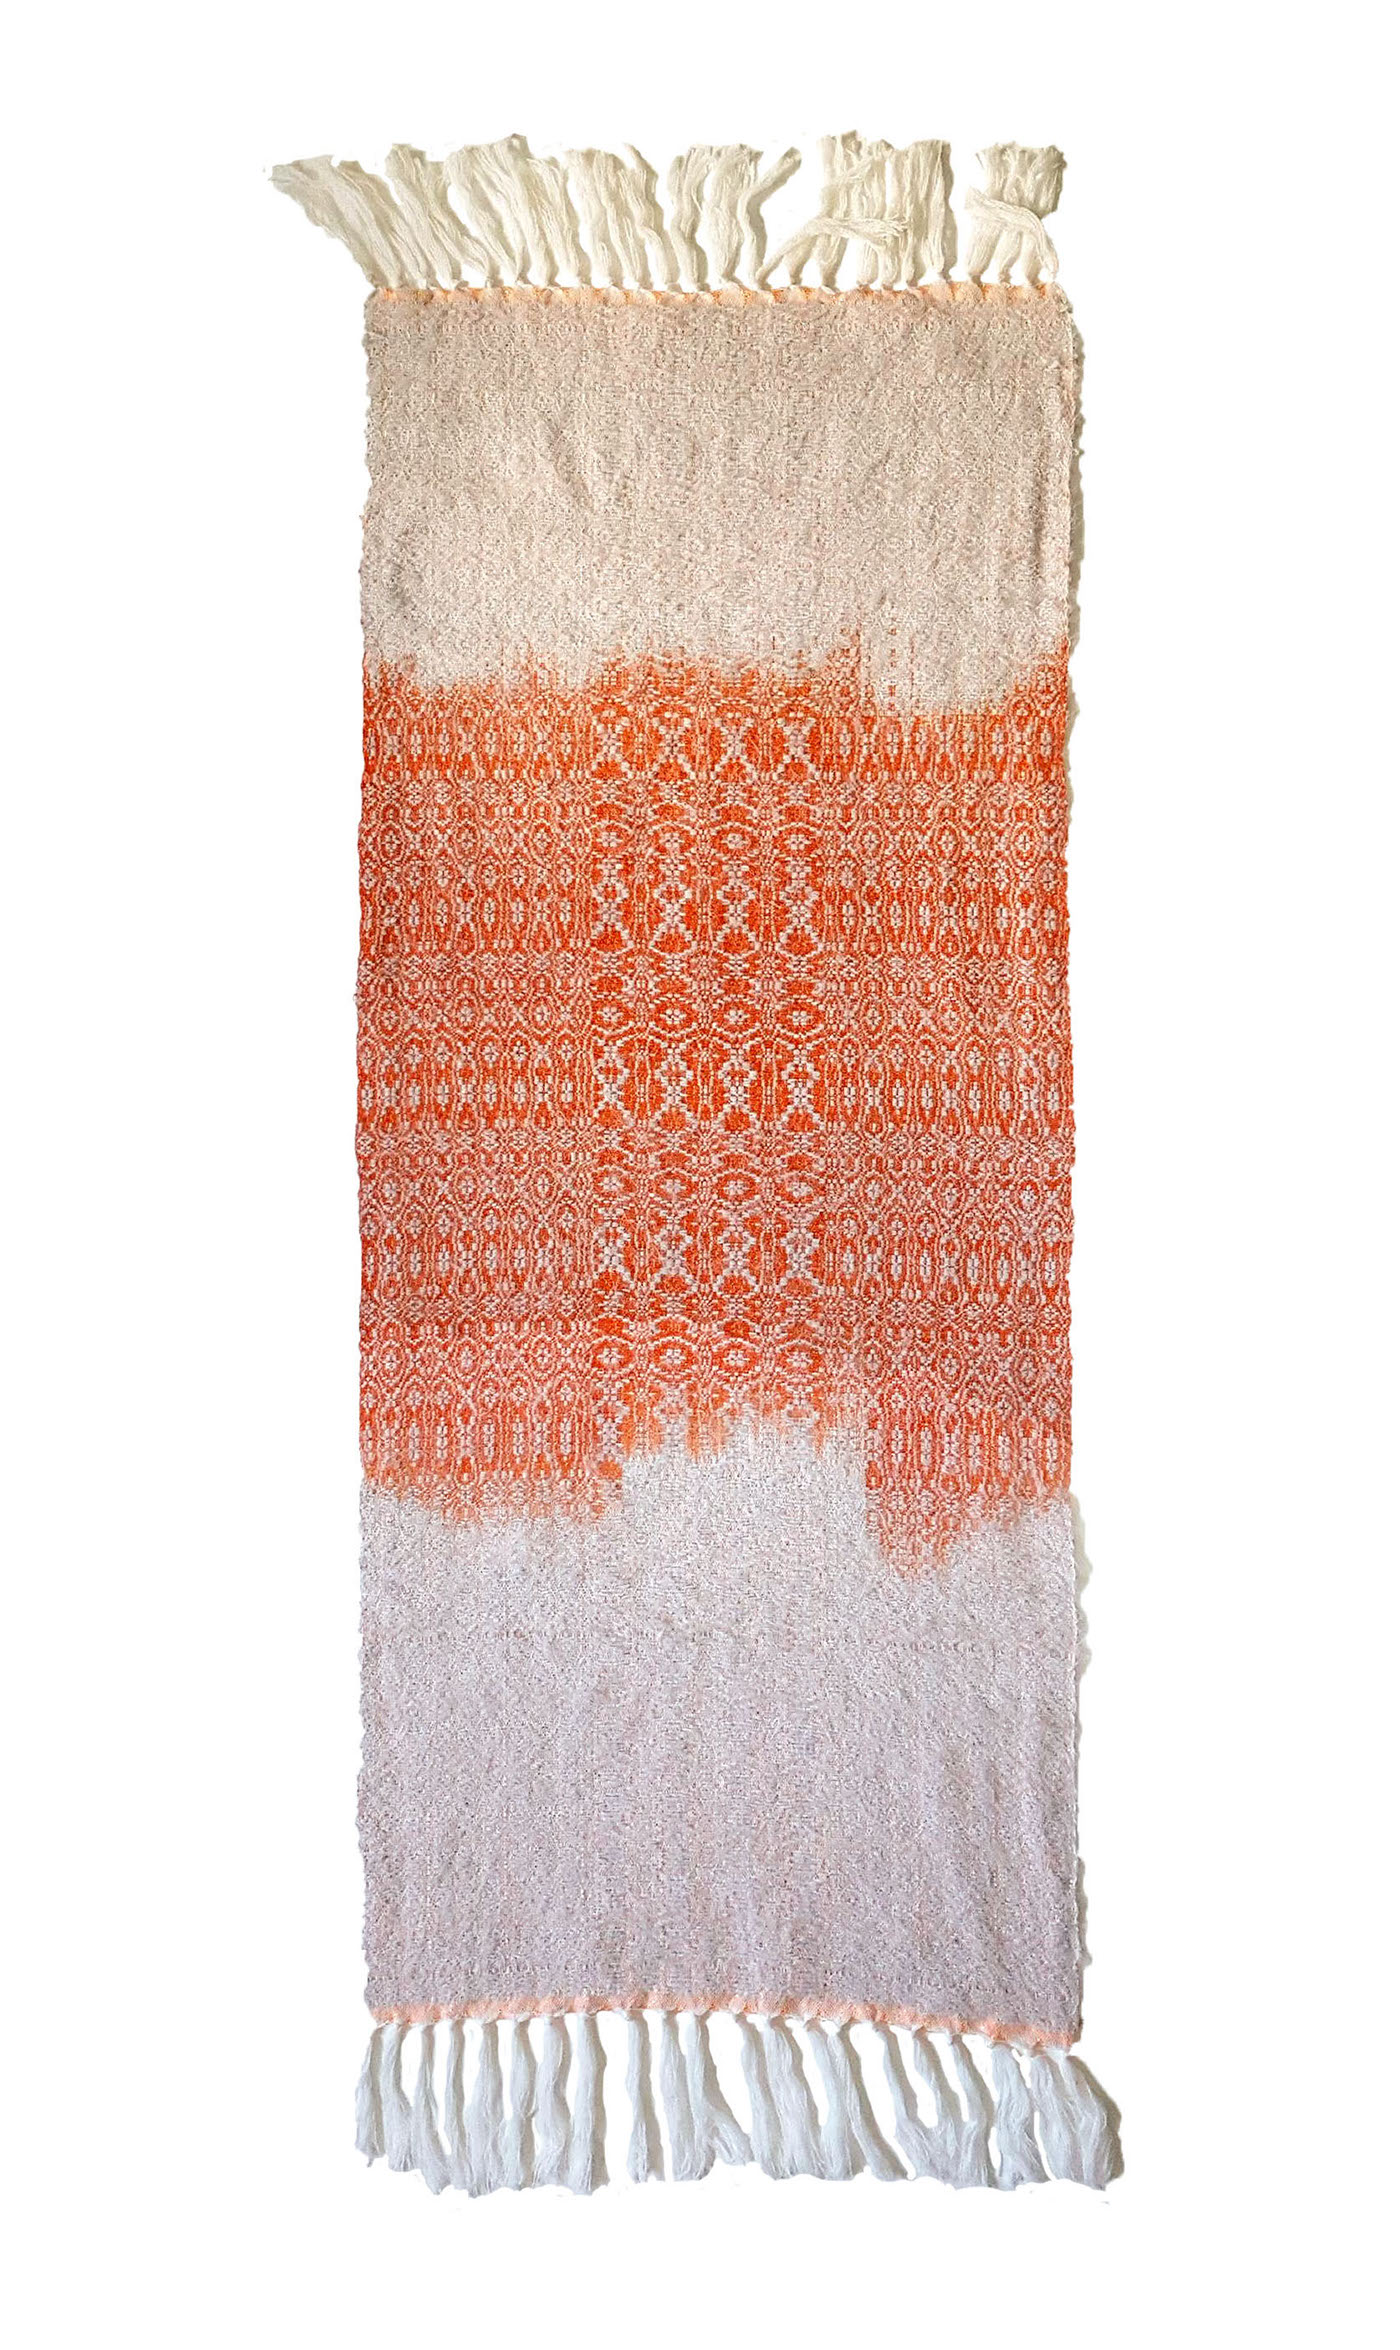 weaving Textiles risd